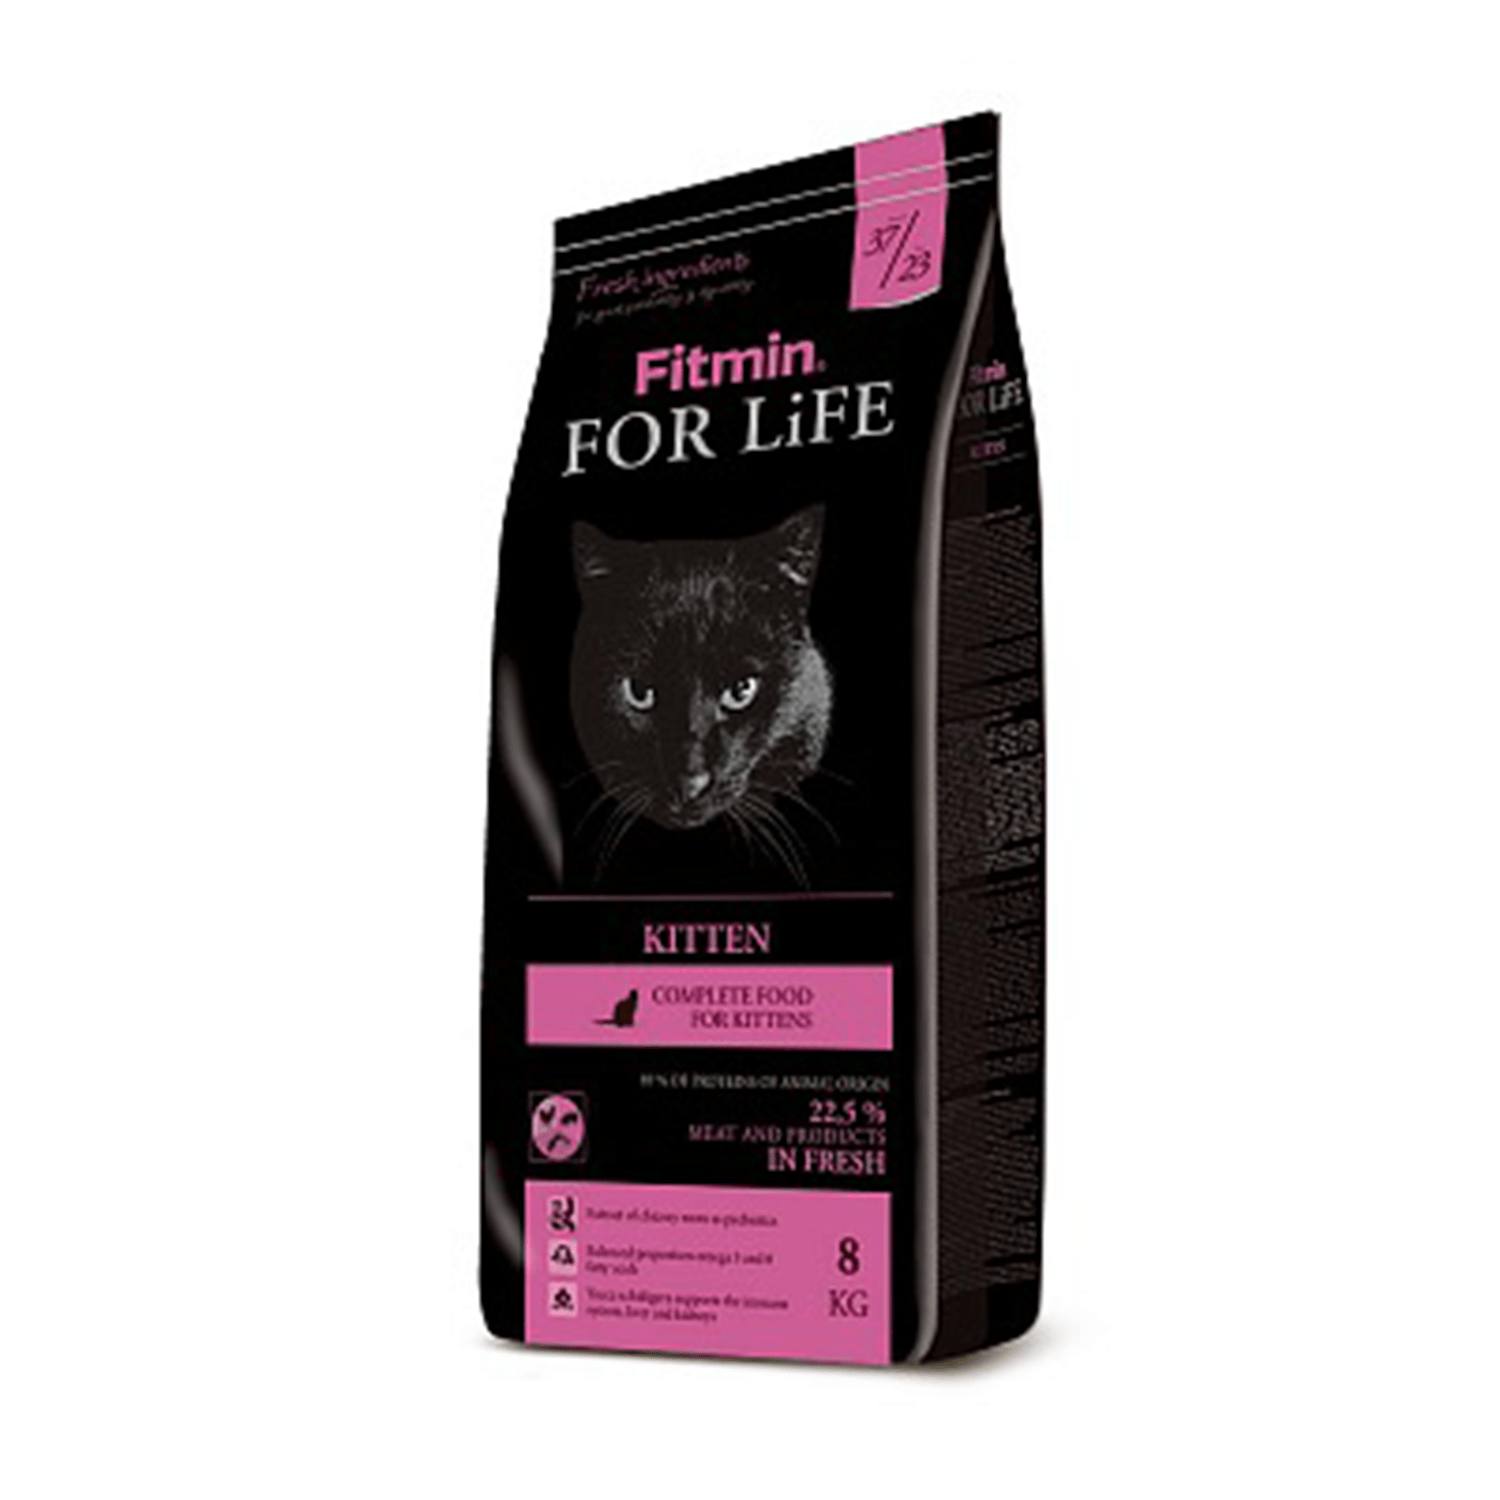 FITMIN FOR LIFE CAT KITTEN